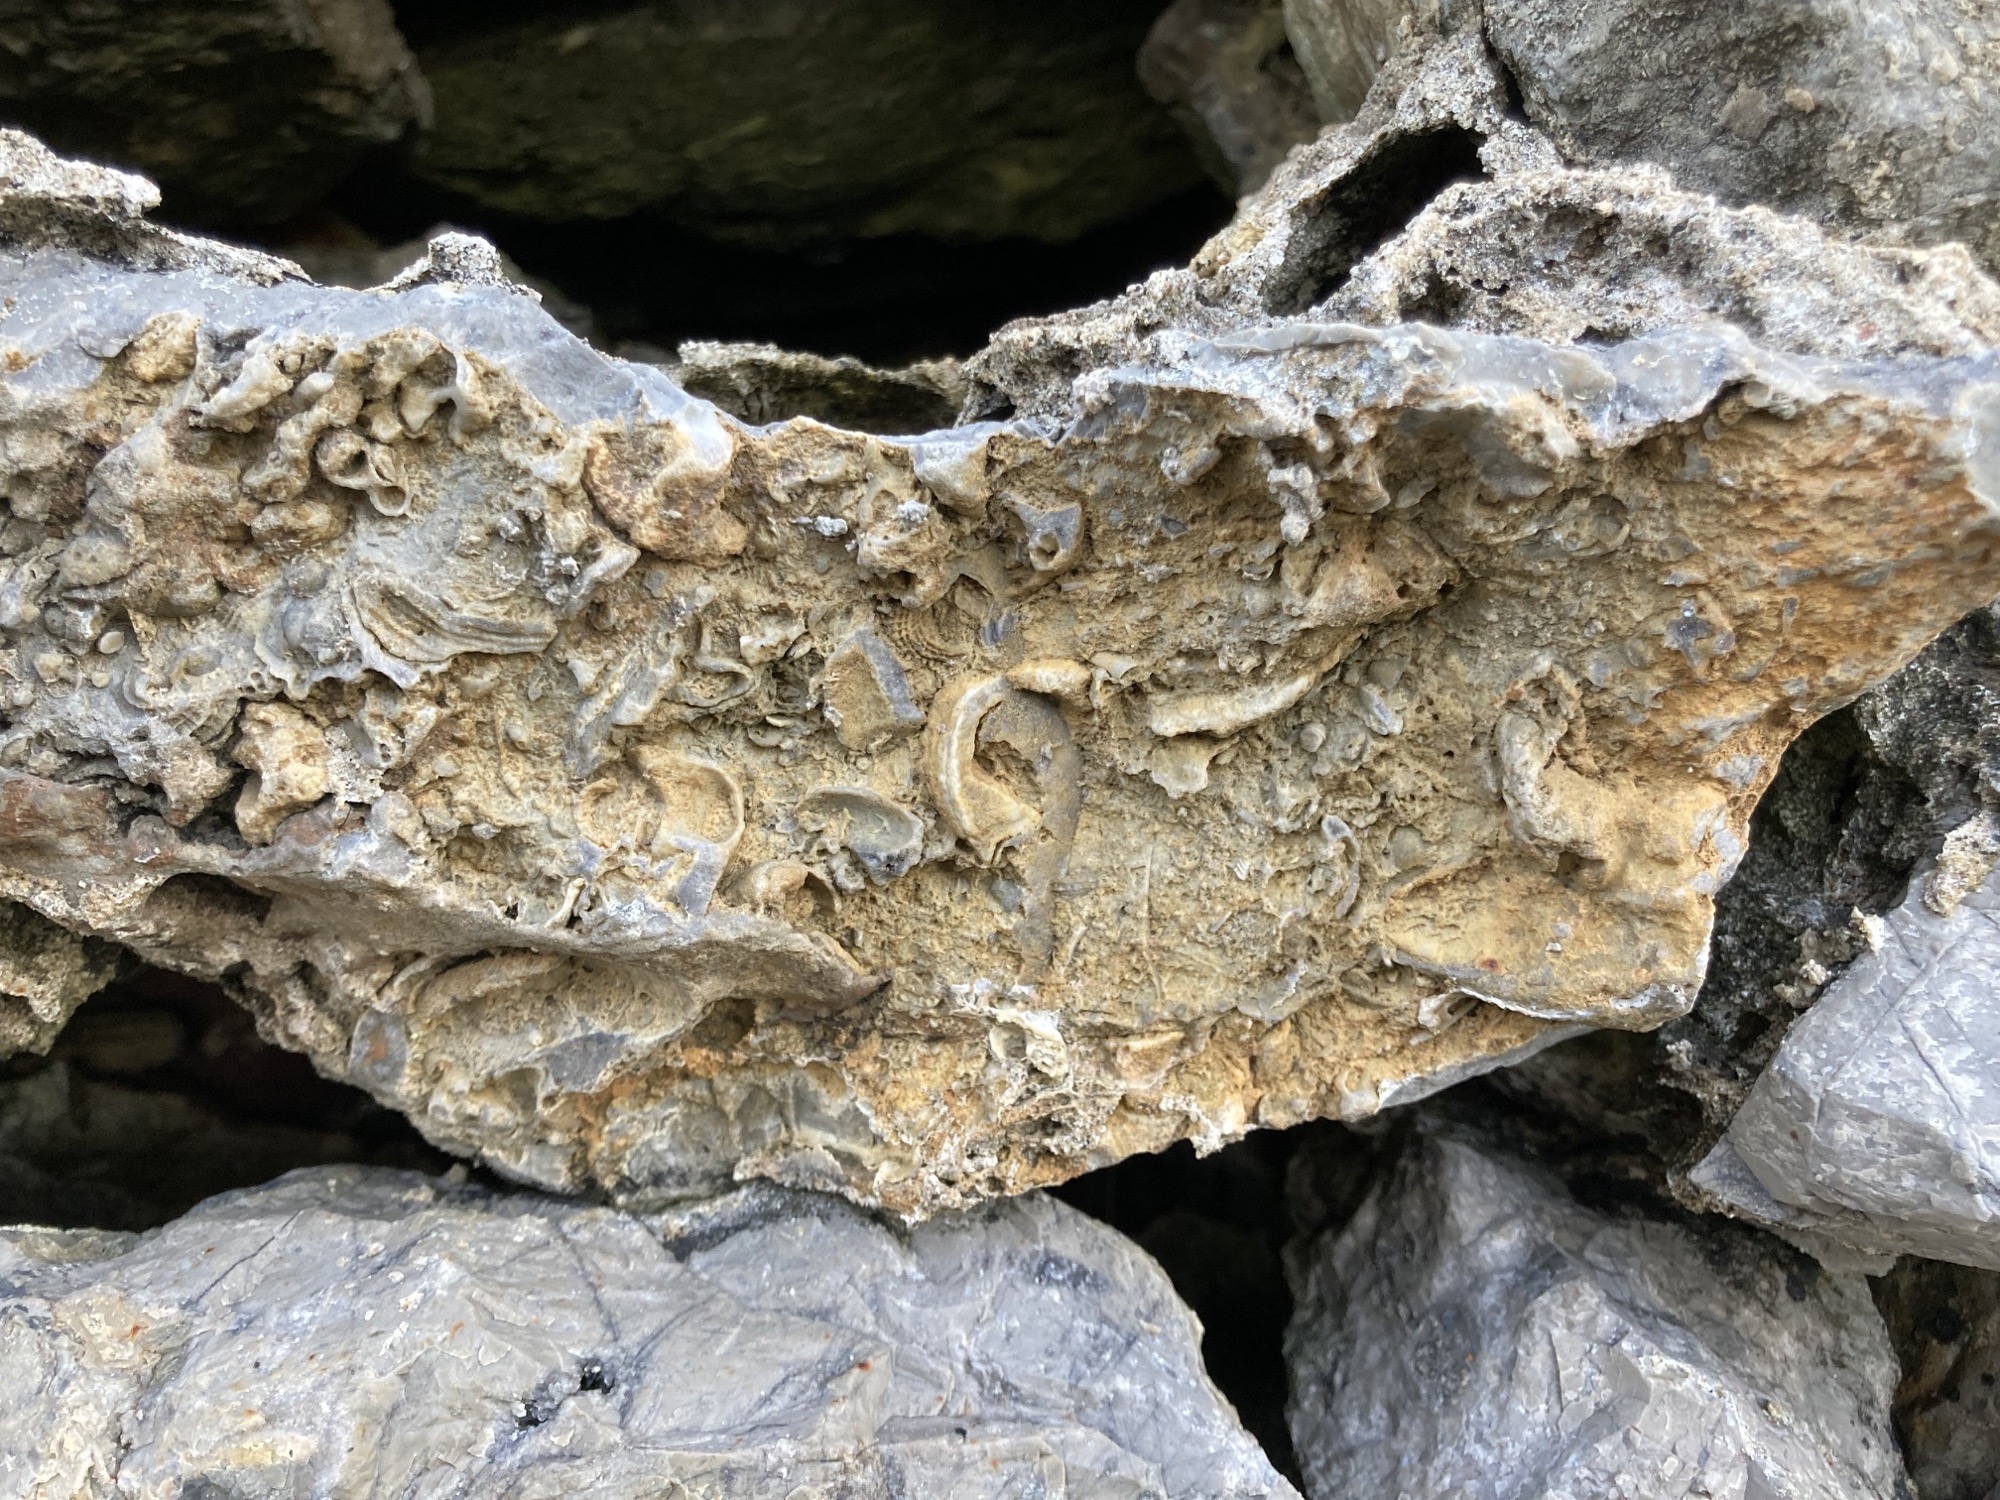 Detailaufnahme eines Felsens, in dessen aufgebrochenem Inneren deutlich Fossilien unterschiedlicher Meerestiere zu erkennen sind